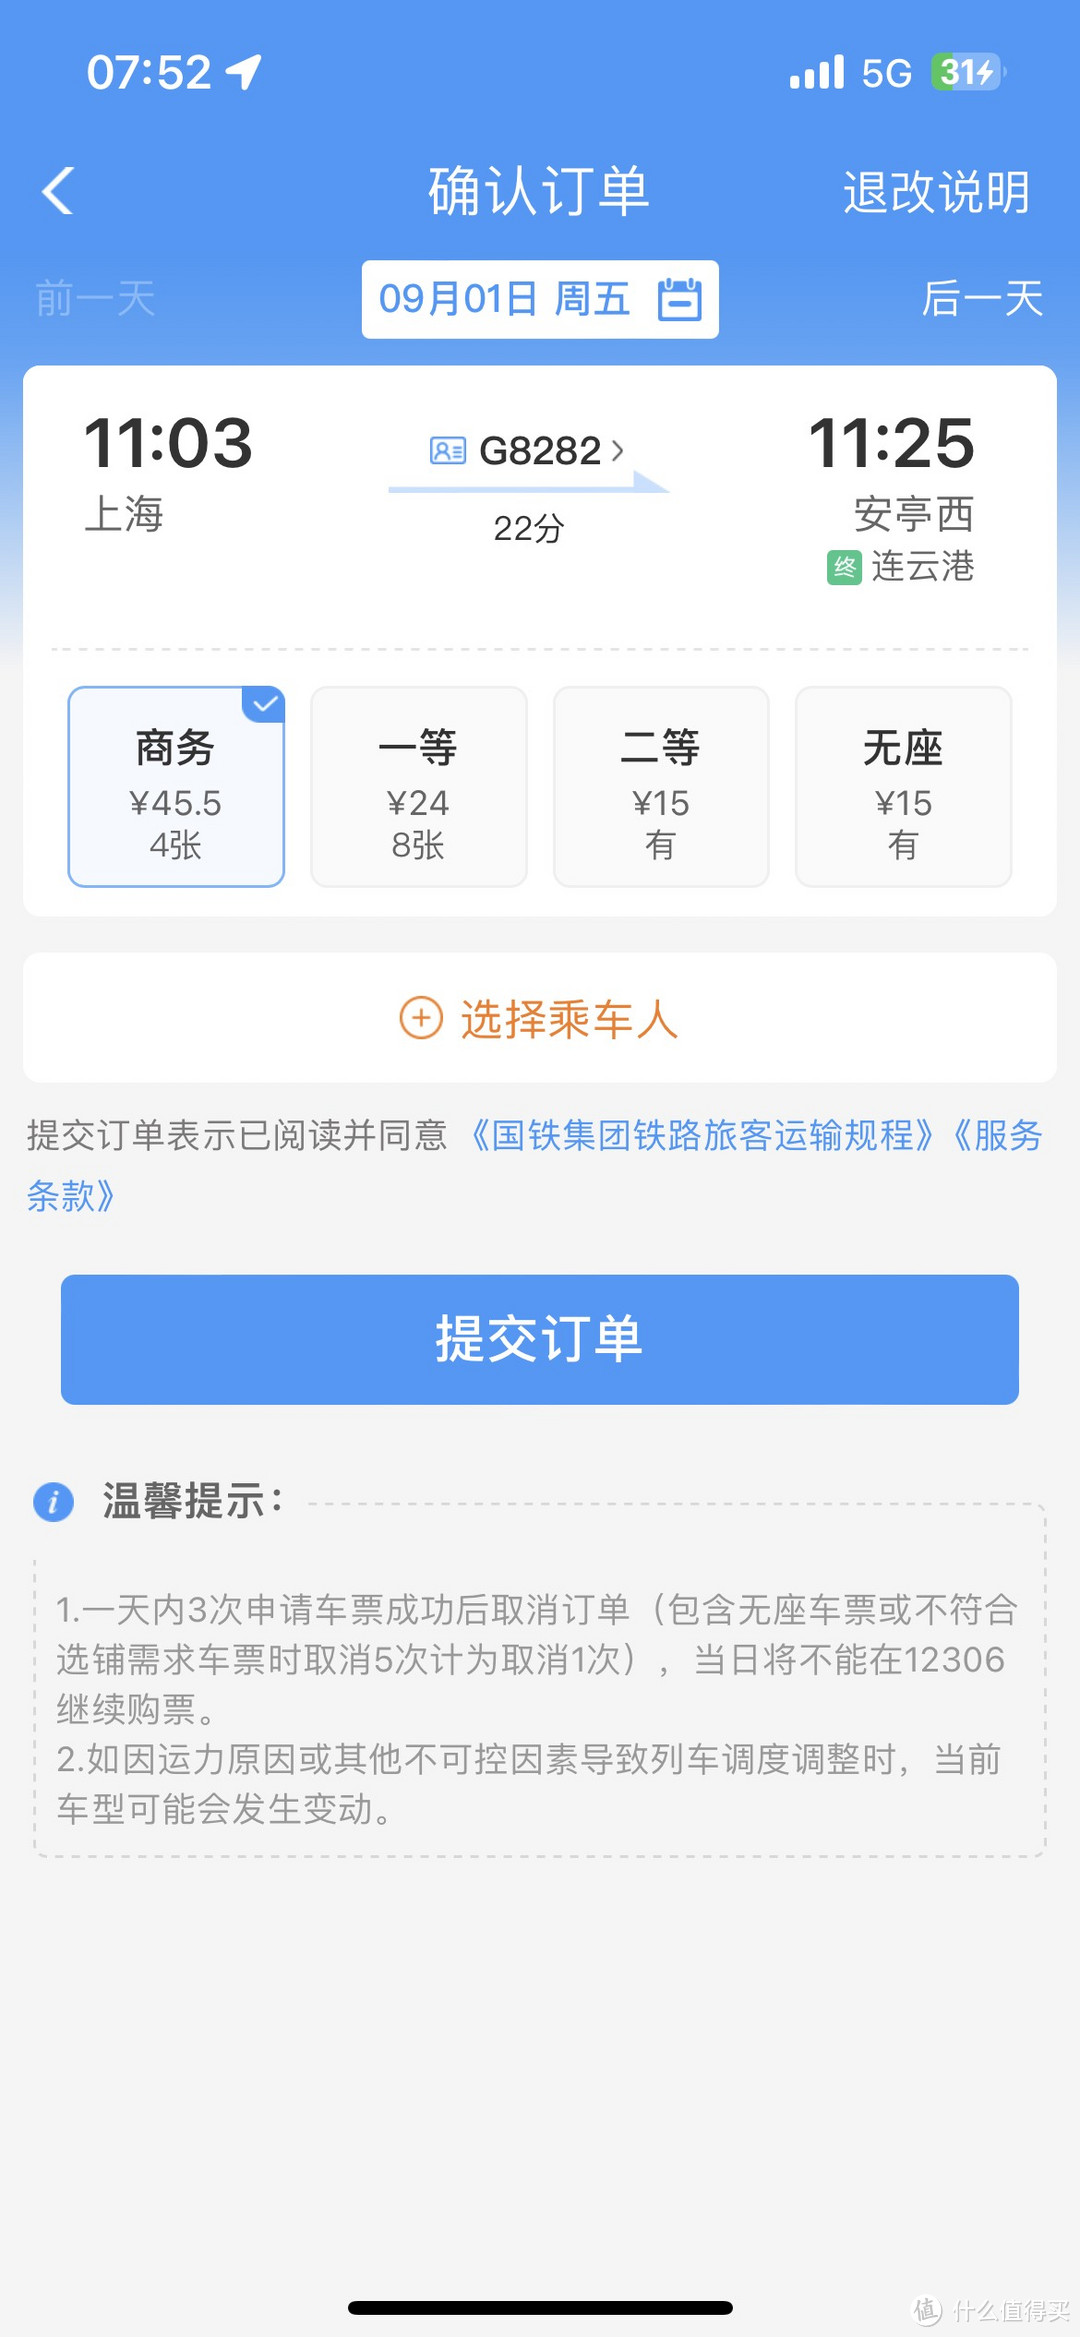 关于12306的花式玩法~从上海站到上海西站~不仅仅是可以挑战最便宜的商务座~